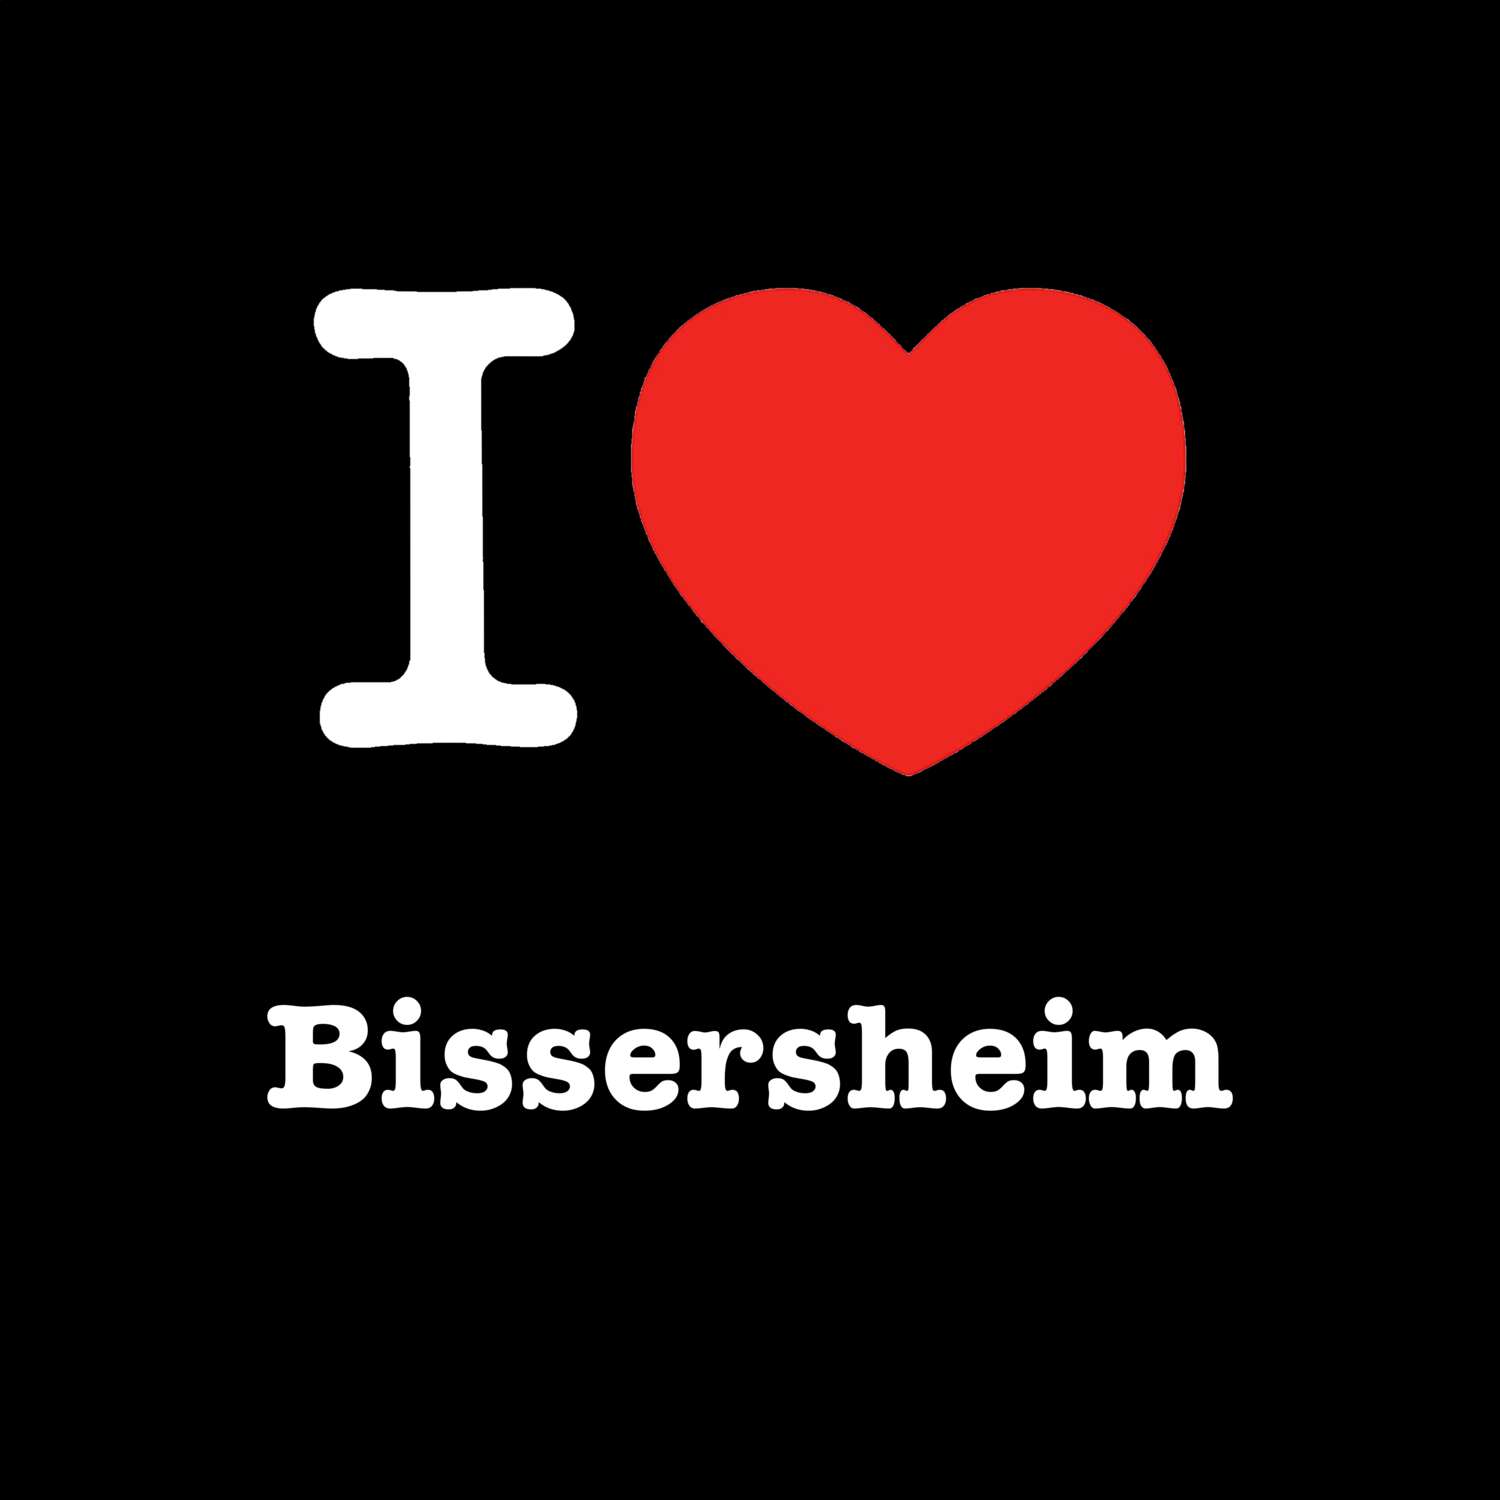 Bissersheim T-Shirt »I love«